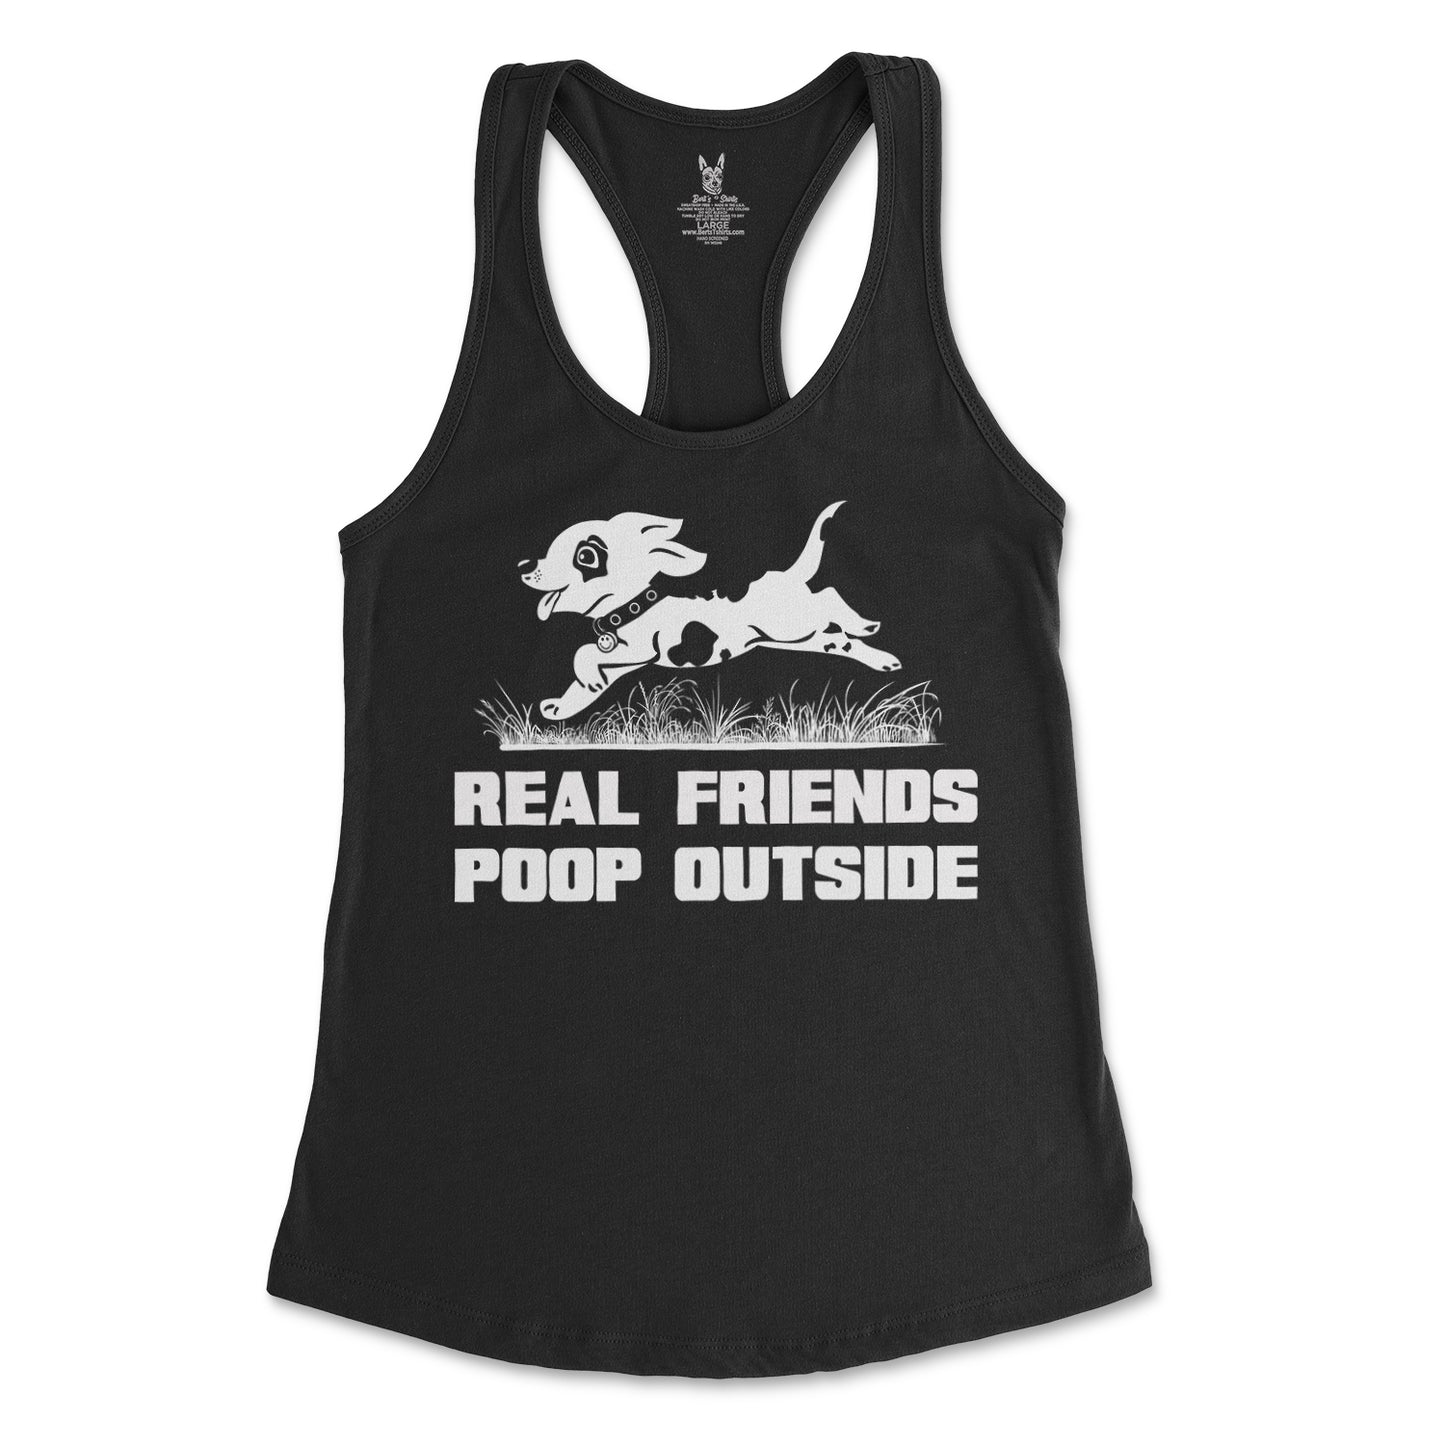 Women's Real Friends Poop Outside Tank Top